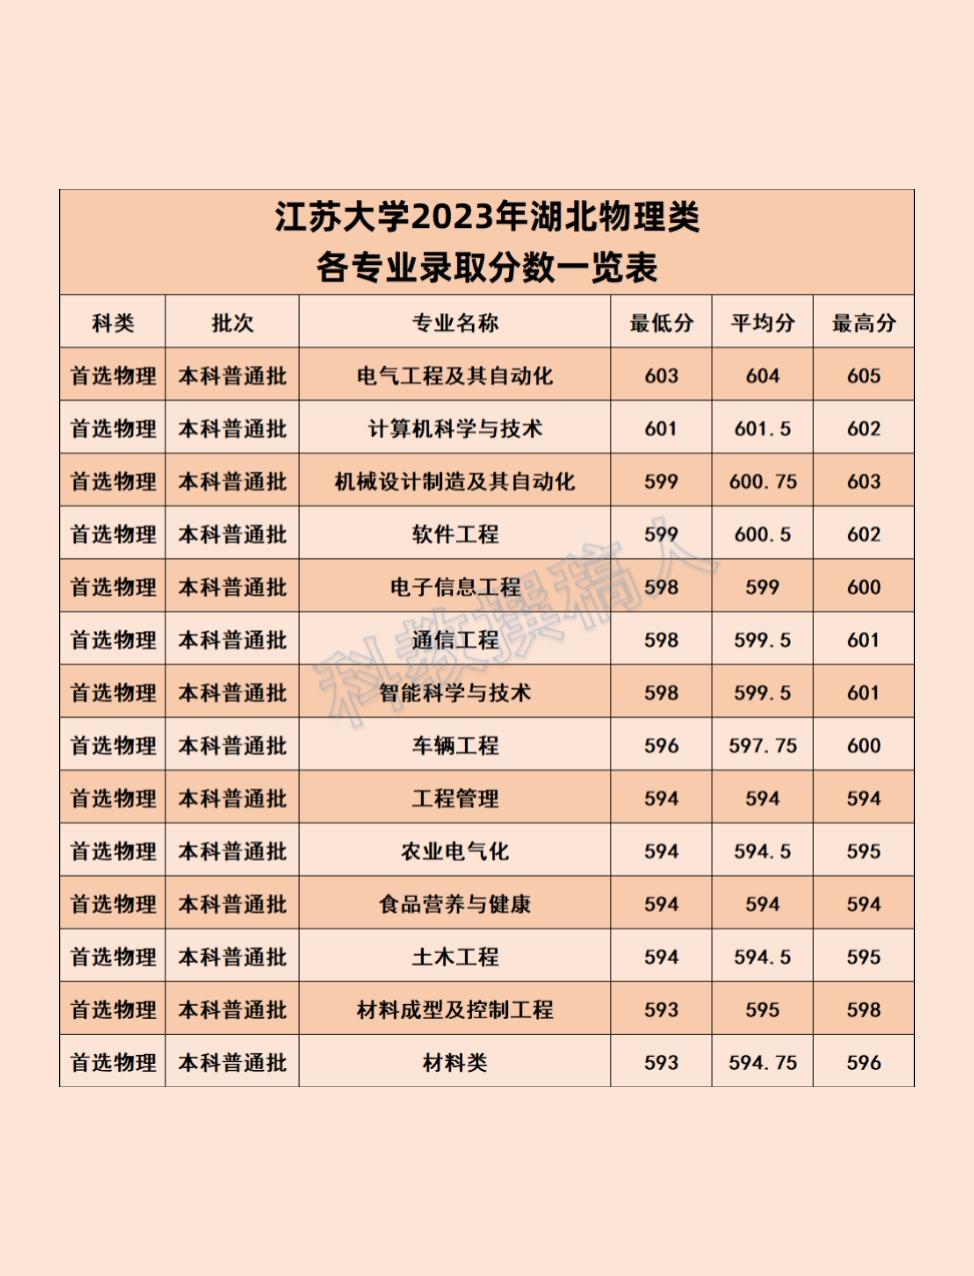 高校315 的想法: 江苏大学2023年各专业录取分数线 